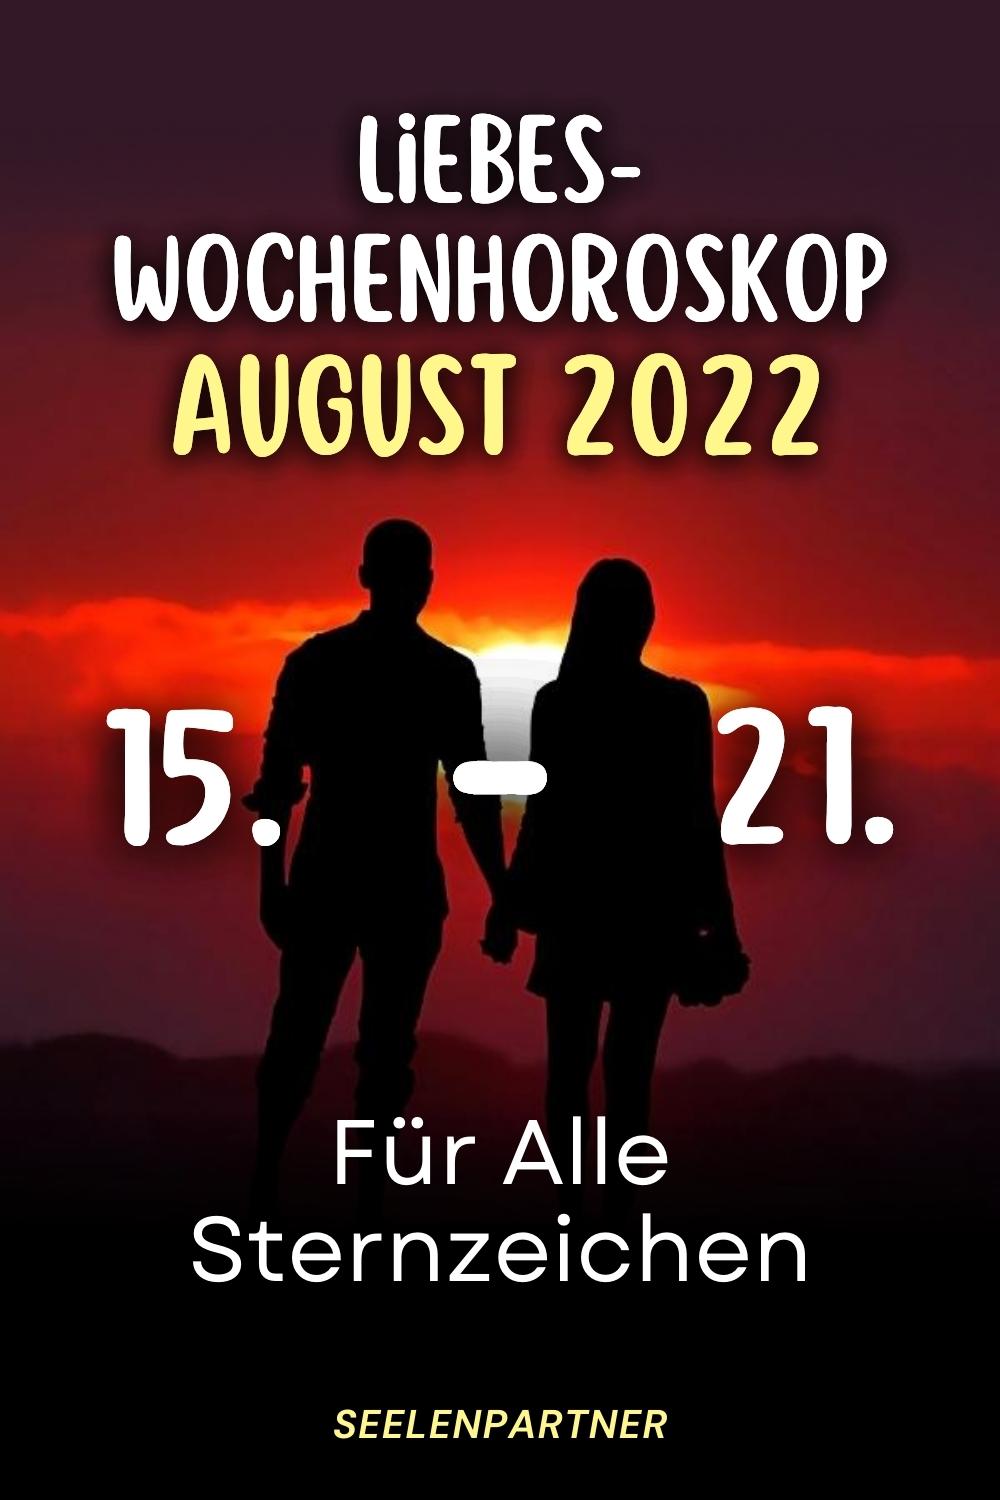 Liebes-Wochenhoroskop August 2022 15 - 21. Für Alle Sternzeichen (1000 × 1500 px)